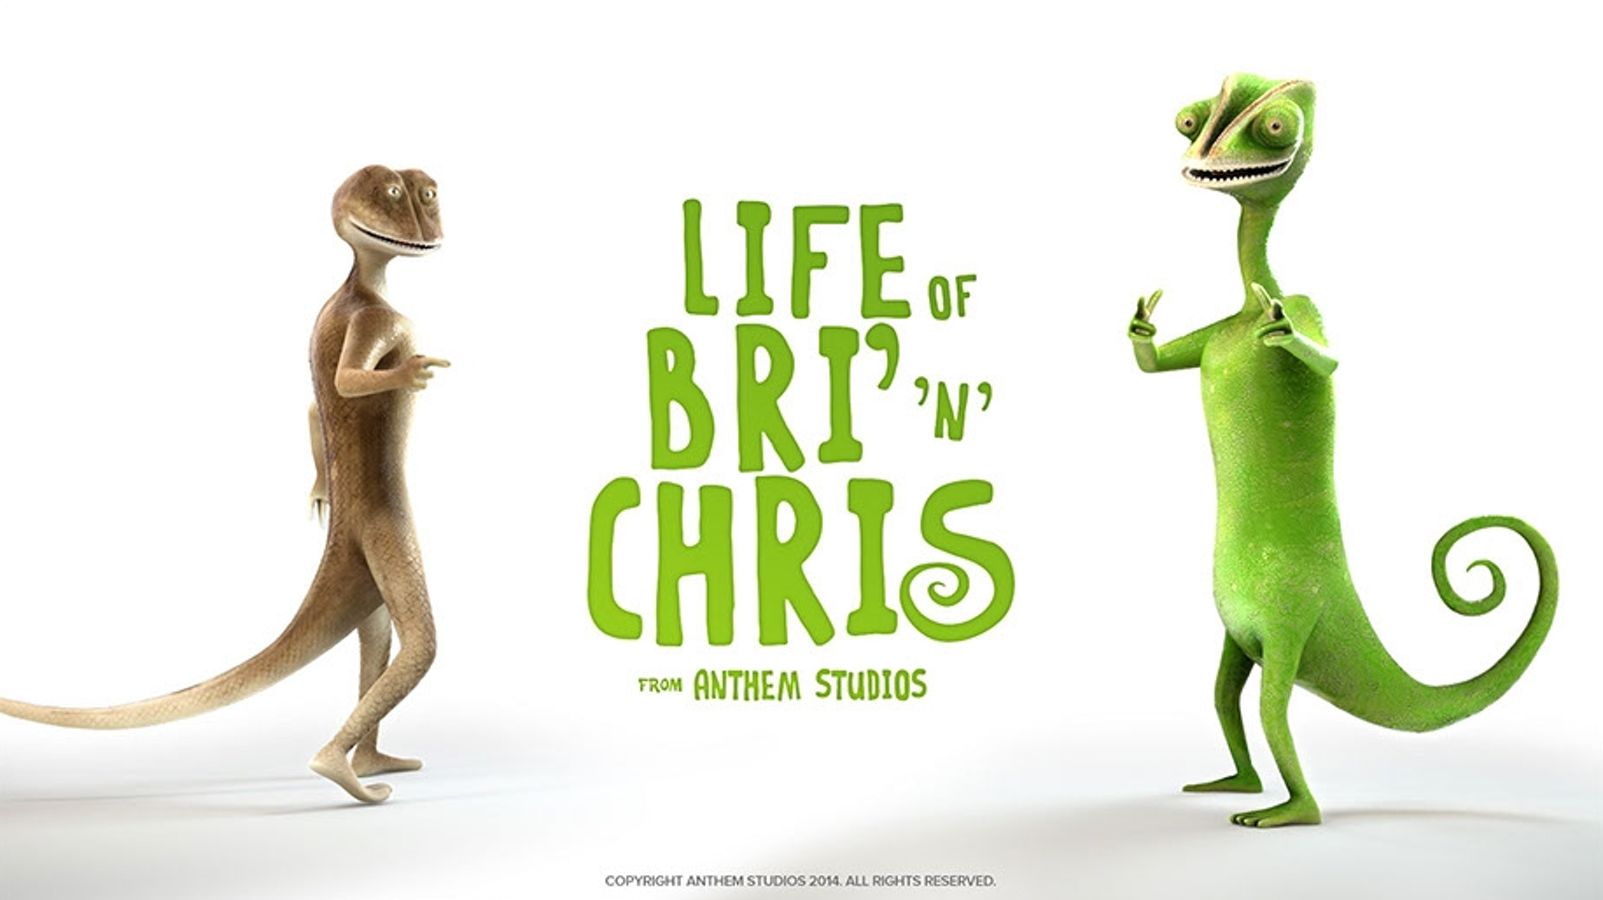 Life of Bri 'n' Chris